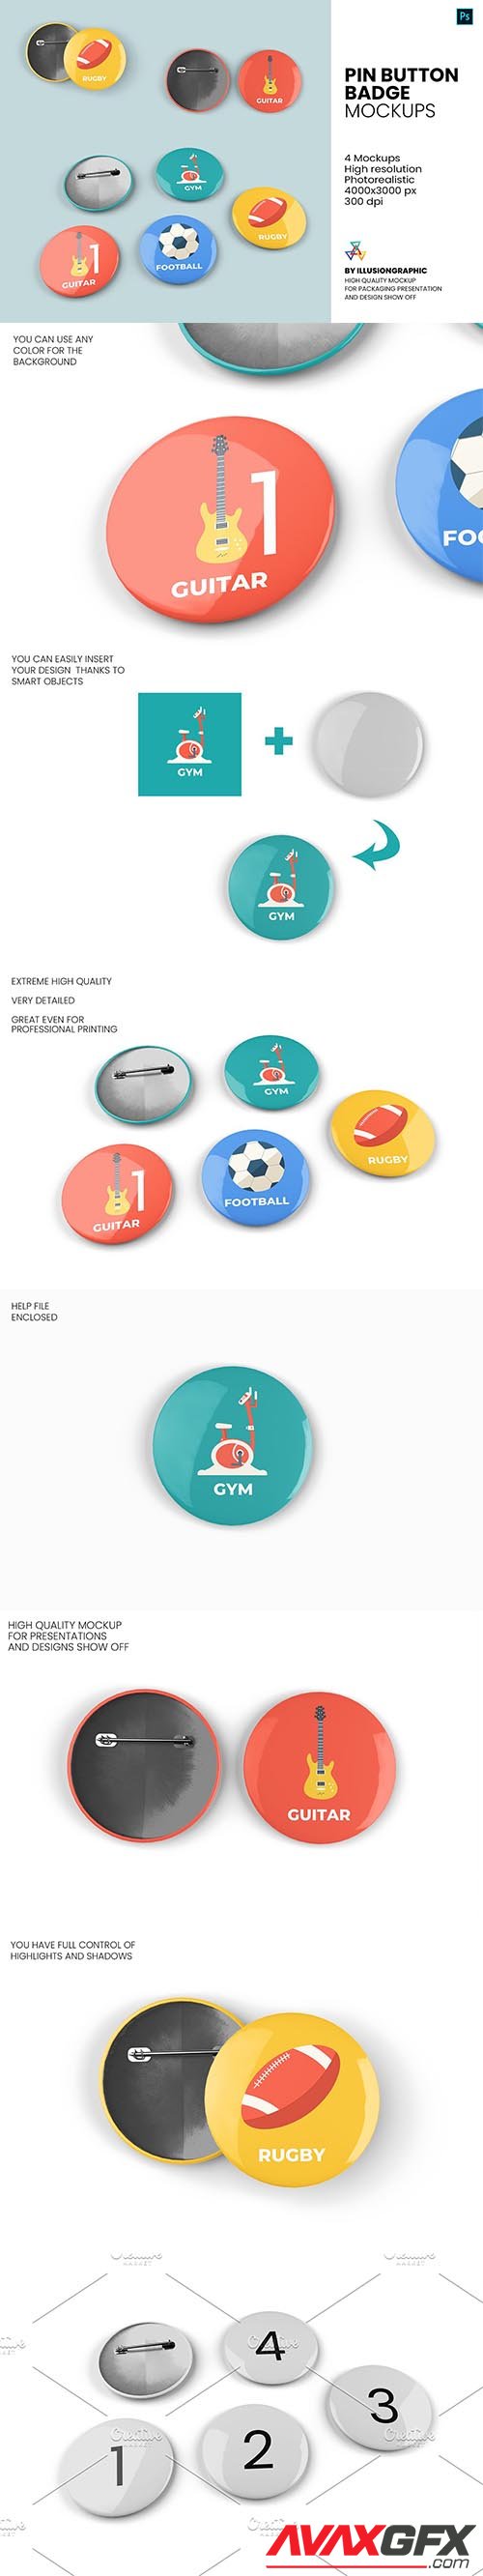 CreativeMarket - Pin Button Badge Mockup - 4 Views 5672634